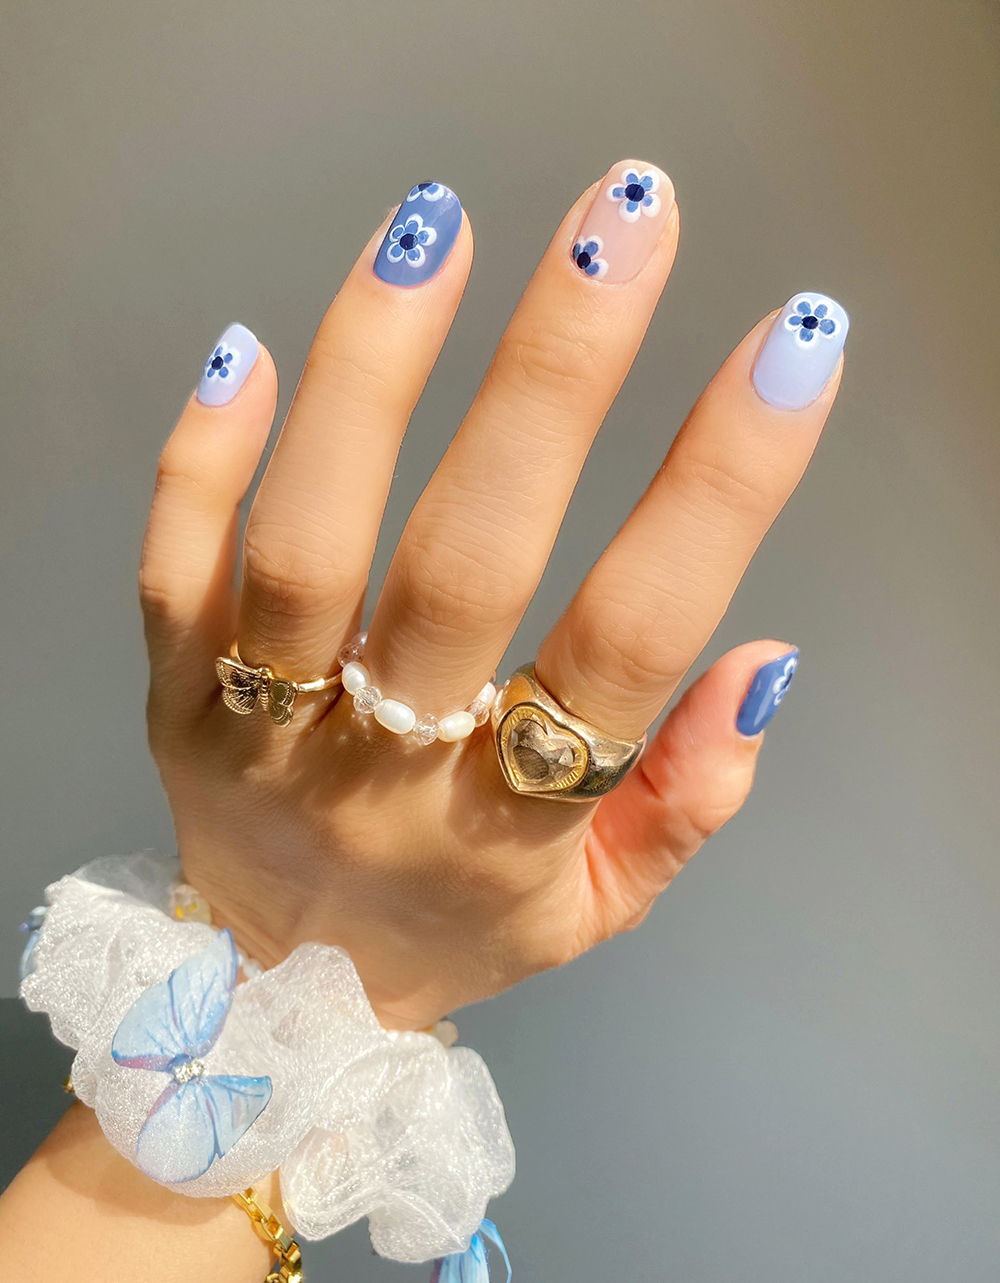 nail màu xanh dương nhạt đắp hoa sang trọng